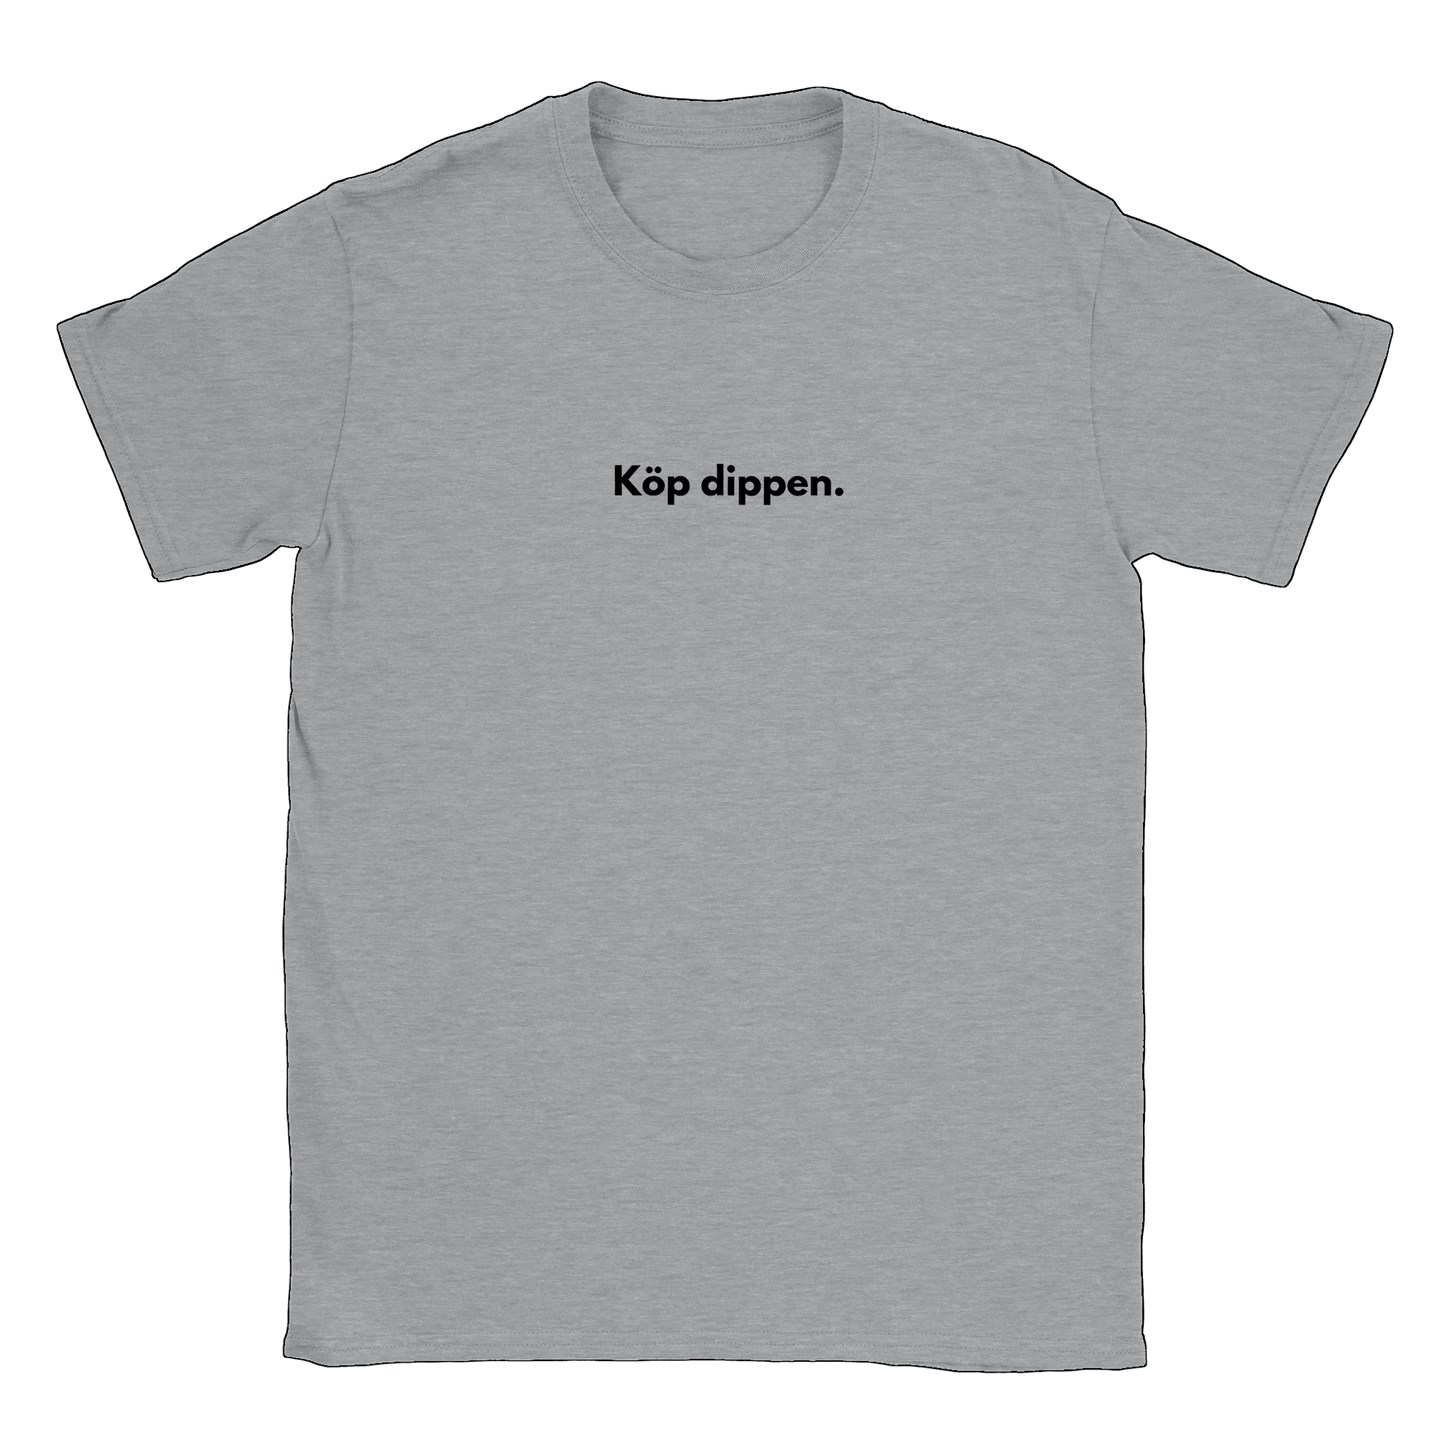 Köp dippen - T-shirt Grå